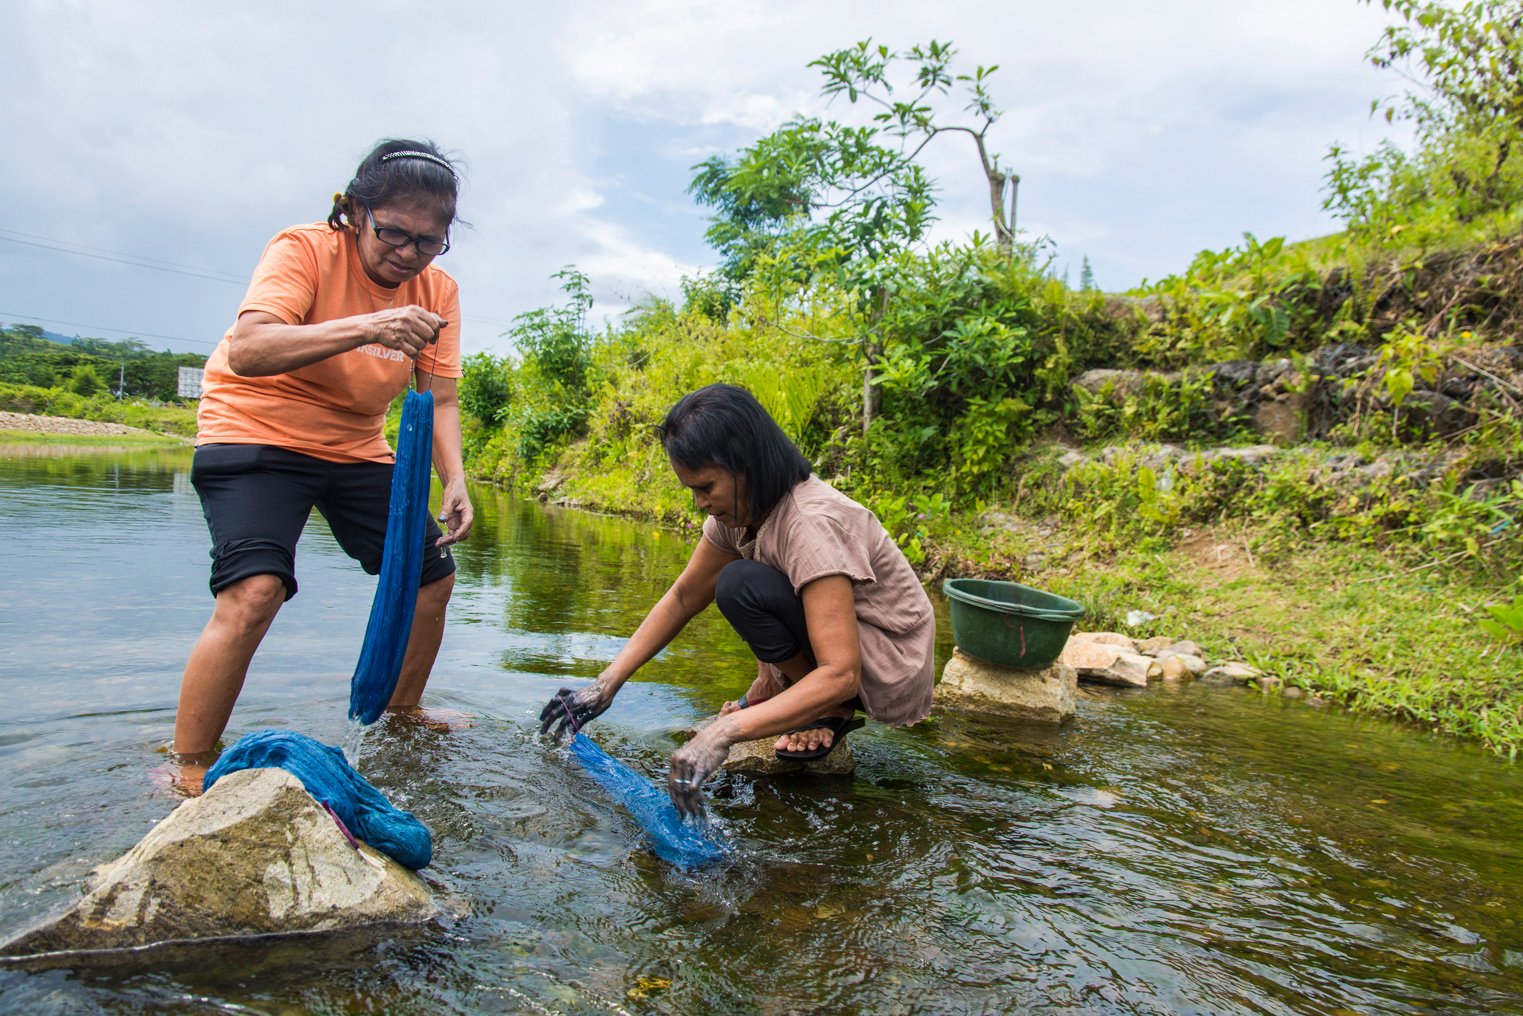 Anggota kelompok Ralsasam mencuci kain yang telah diberi pewarna berbahan dasar daun taro yang digunakan sebagai pewarna alami kain tenun ikat Tanimbar, Ambon, Maluku. ANTARA FOTO/ FB Anggoro/AW.